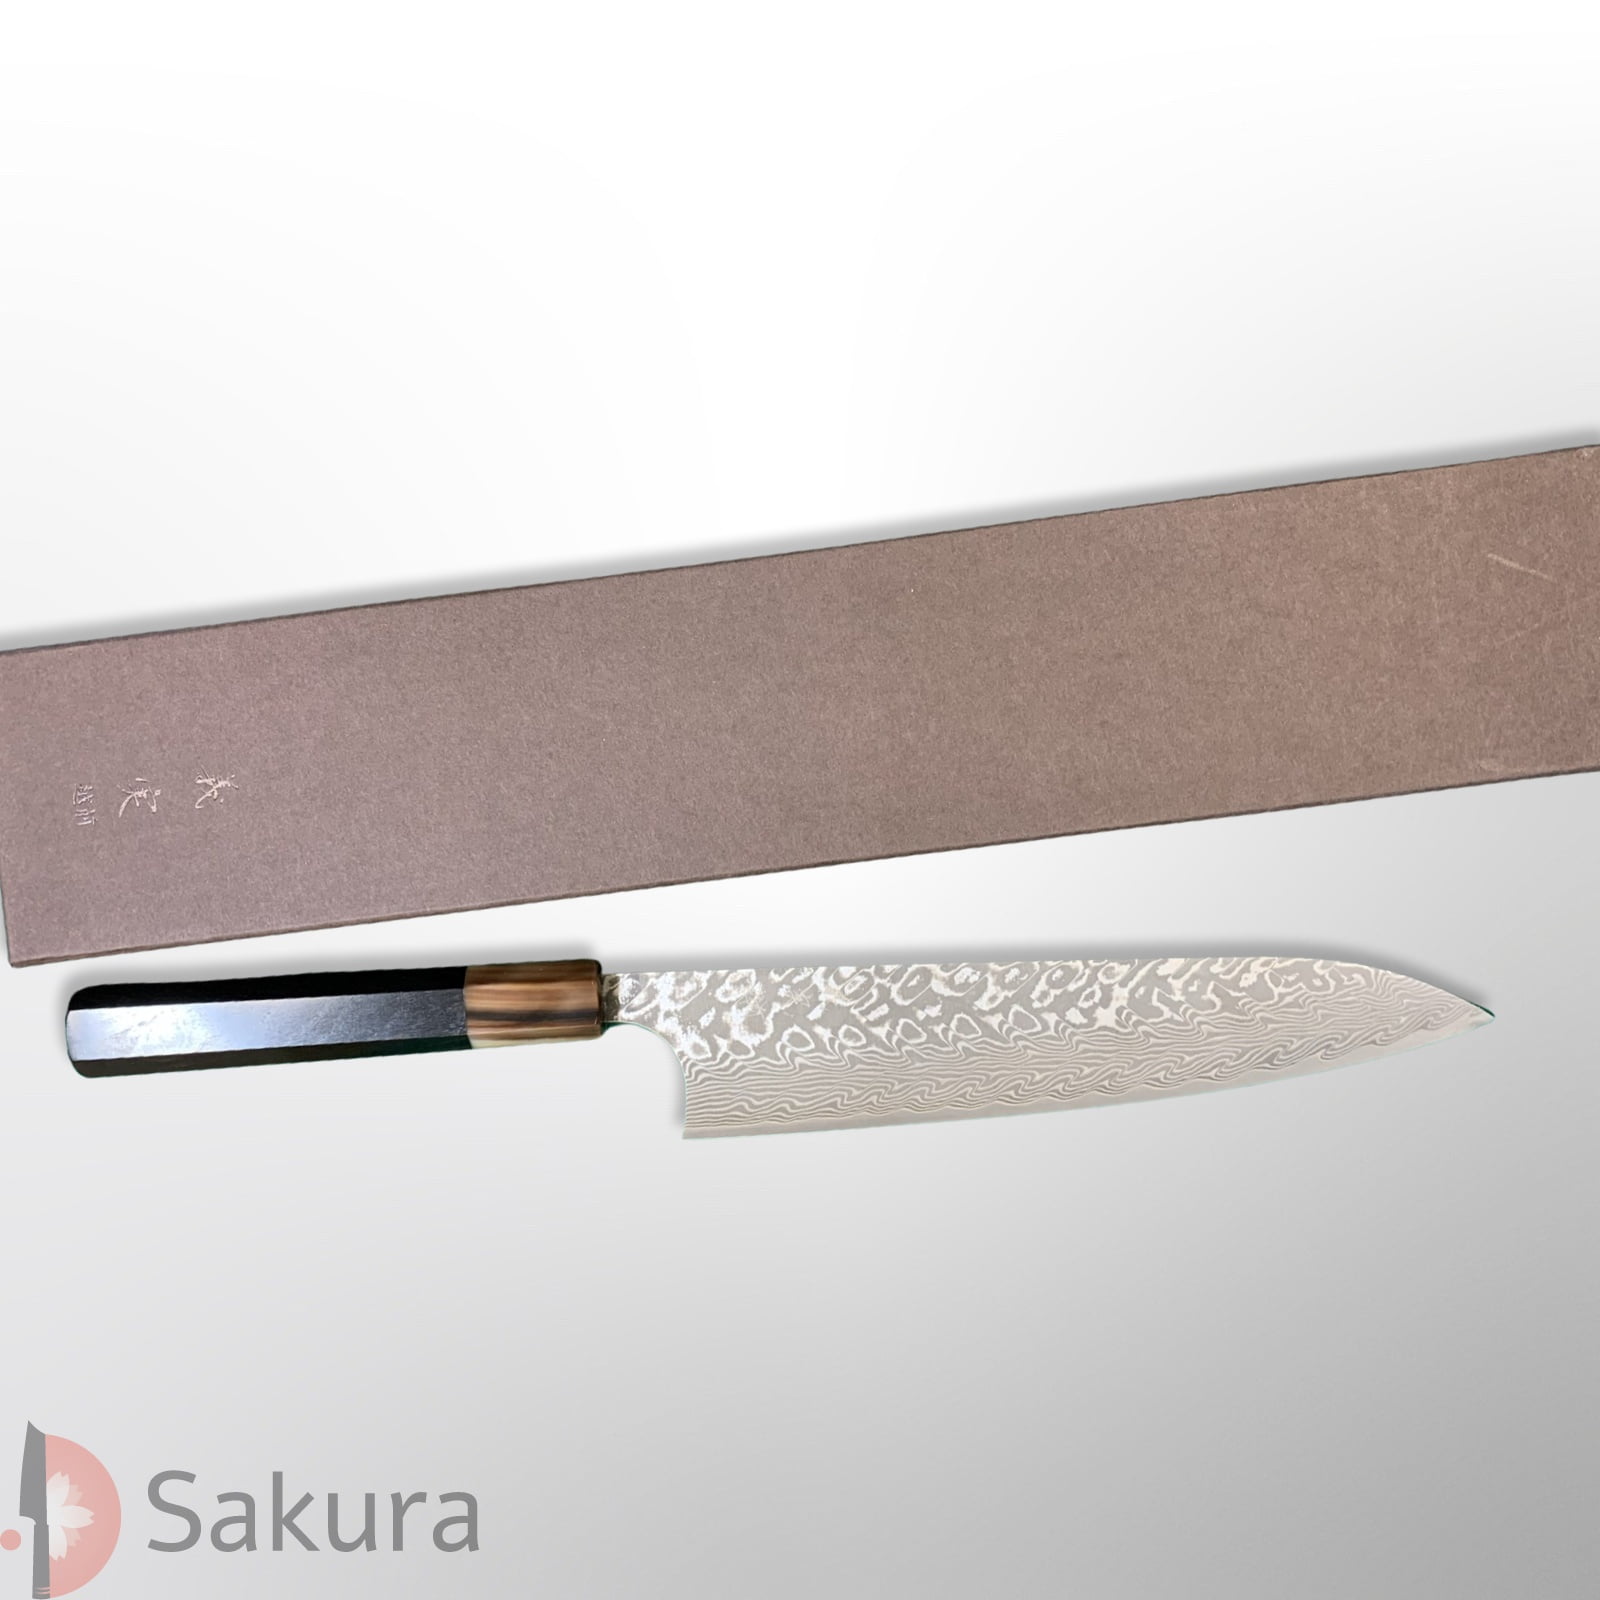 סכין שף רב-תכליתית גִּיוּטוֹ 210מ״מ מחושלת בעבודת יד 3 שכבות: פלדת פחמן יפנית מתקדמת מסוג R2/SG2 עטופה פלדת דמשק אל-חלד גימור דמשק יושימי קאטו יפן – SKKATOSG2GYUT21019